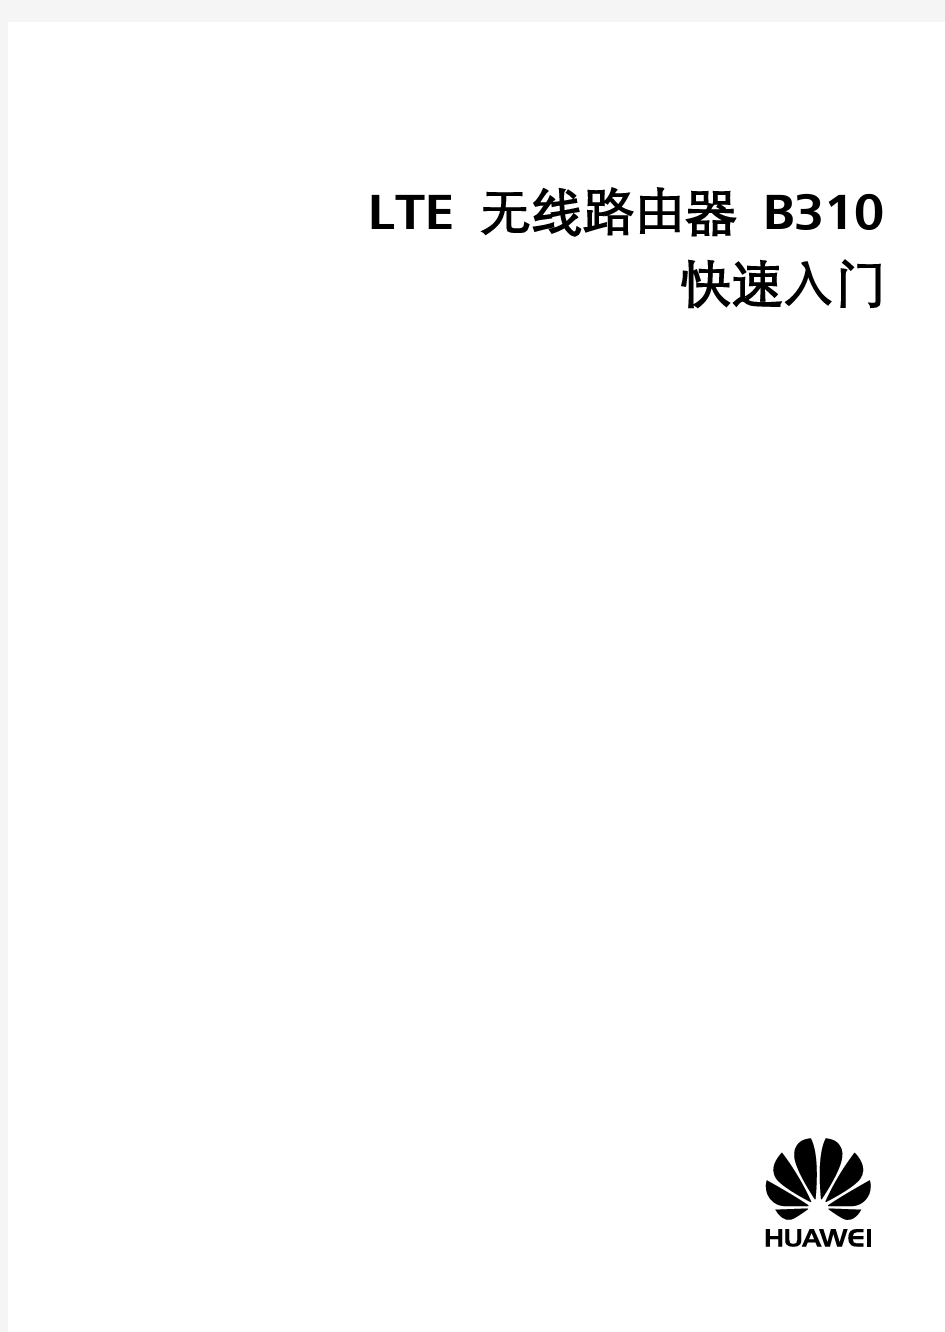 LTE无线路由器B310快速入门-Huawei